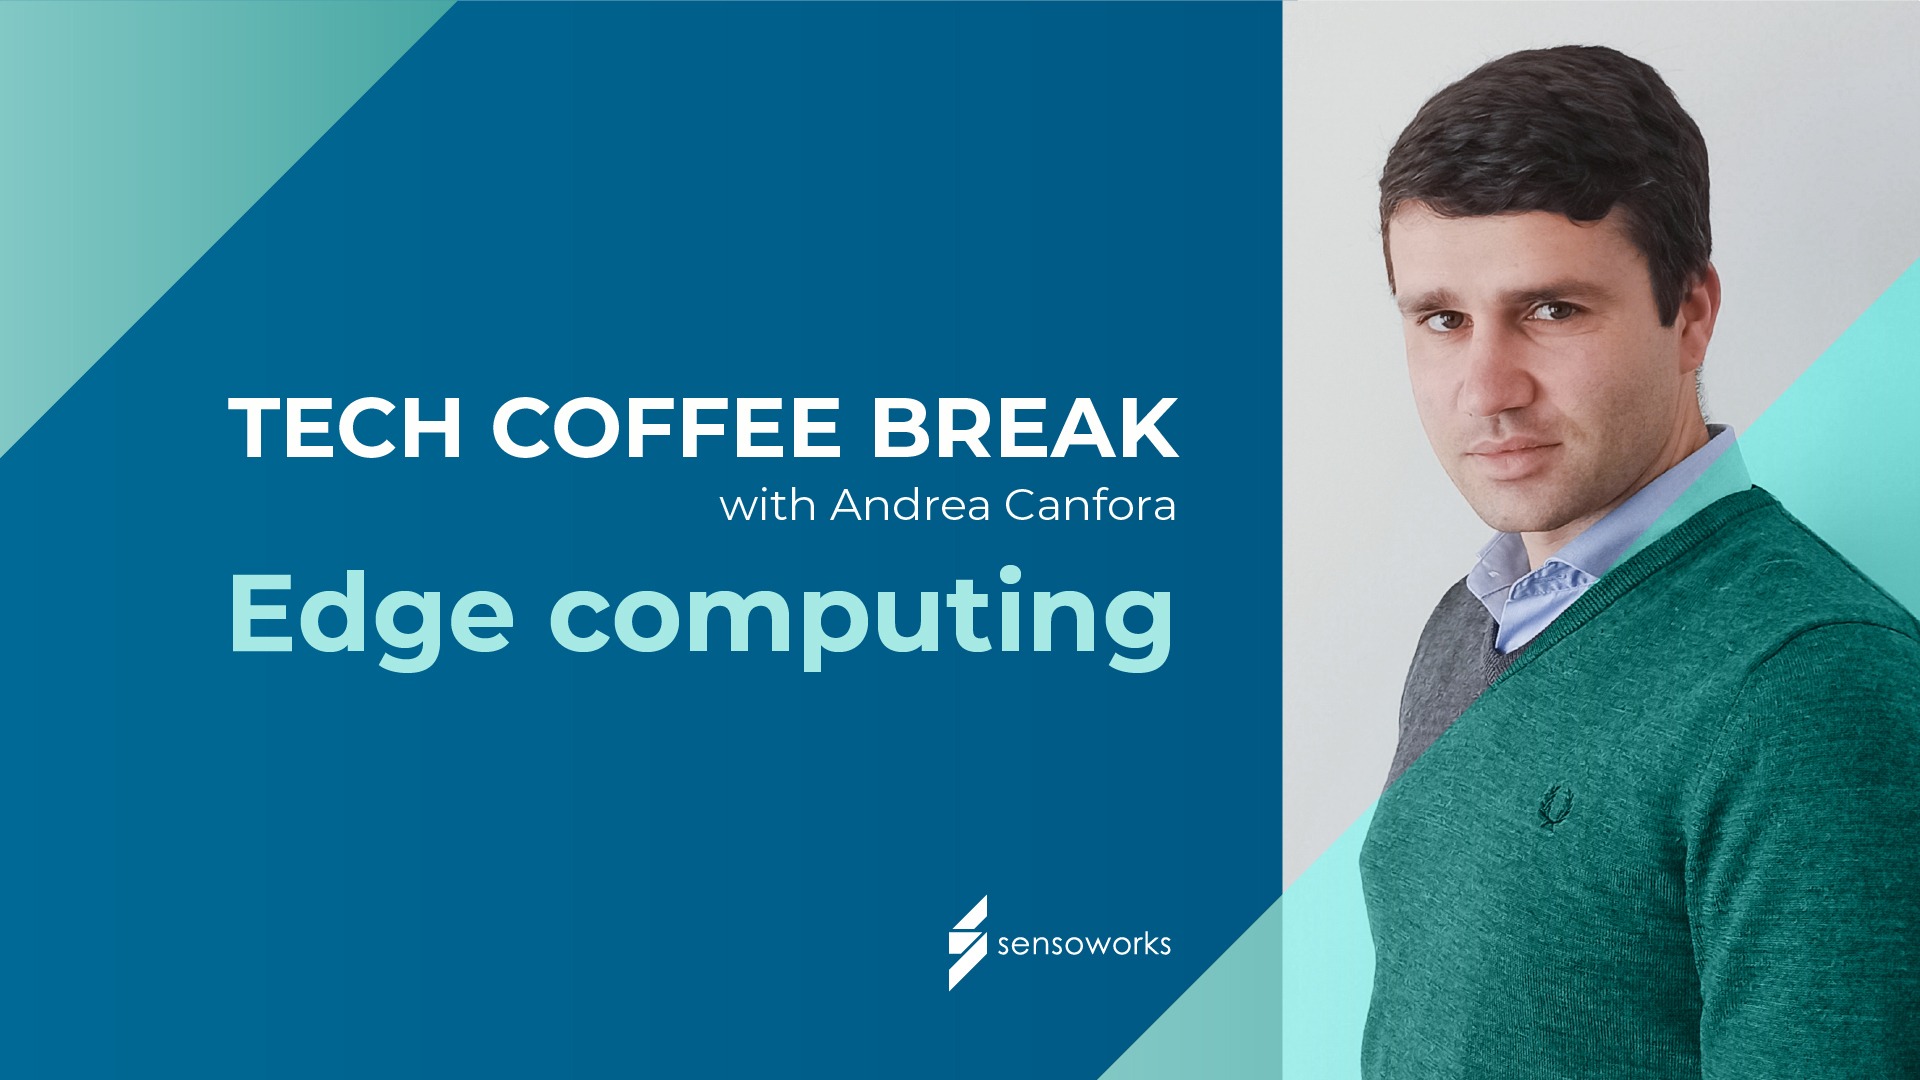 EDGE COMPUTING - TECH COFFEE BREAK con Andrea Canfora